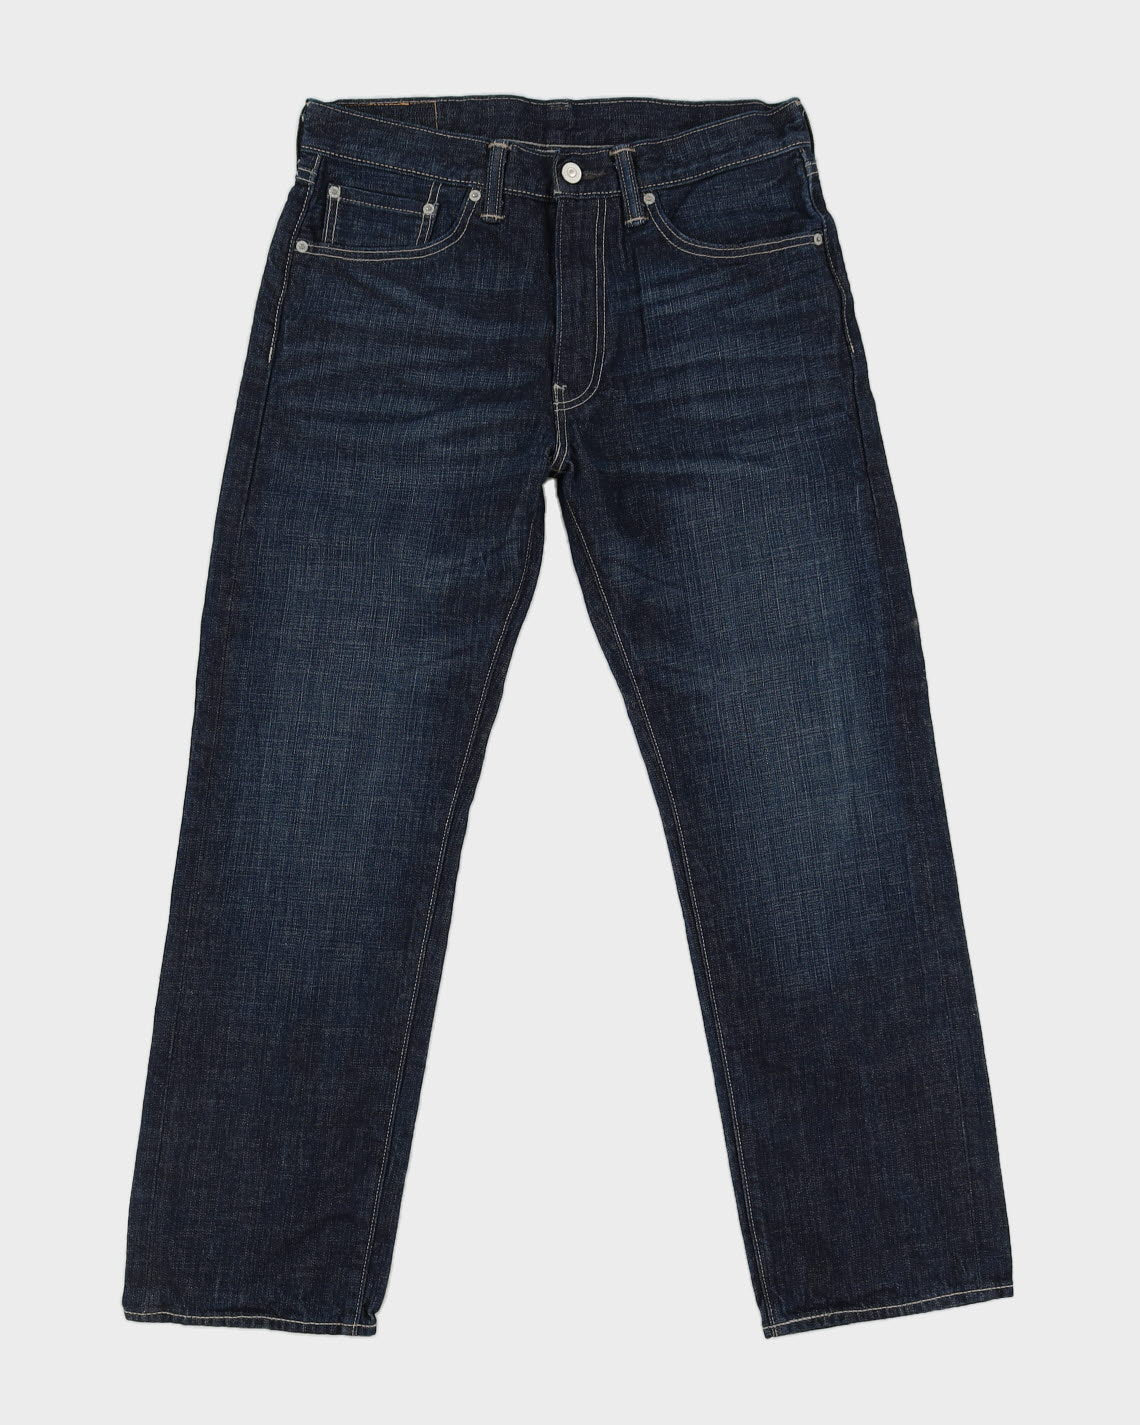 Levi's 505 Blue Jeans W33 L30